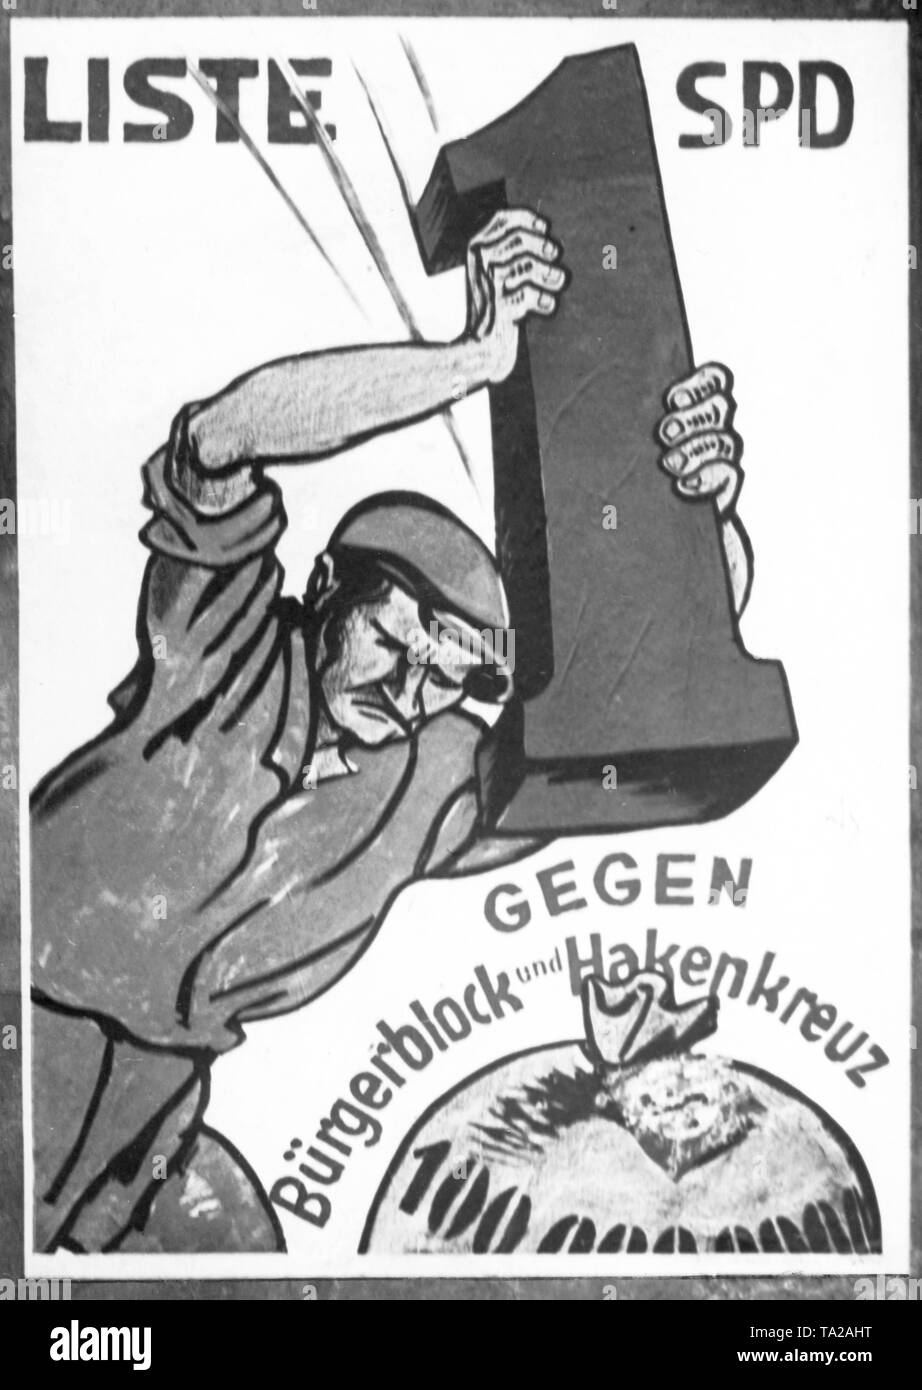 Vor dem Reichstag muesse sich die SPD Stimmen. Mit diesem Plakat geworben. Es ist ein Mann mit einem großen 1, die Liste der SPD, mit der er Streiks eine Geld-Beutel. Über die Tasche, die Inschrift lautet: "Gegen die Buergerblock und das Hakenkreuz'. Stockfoto